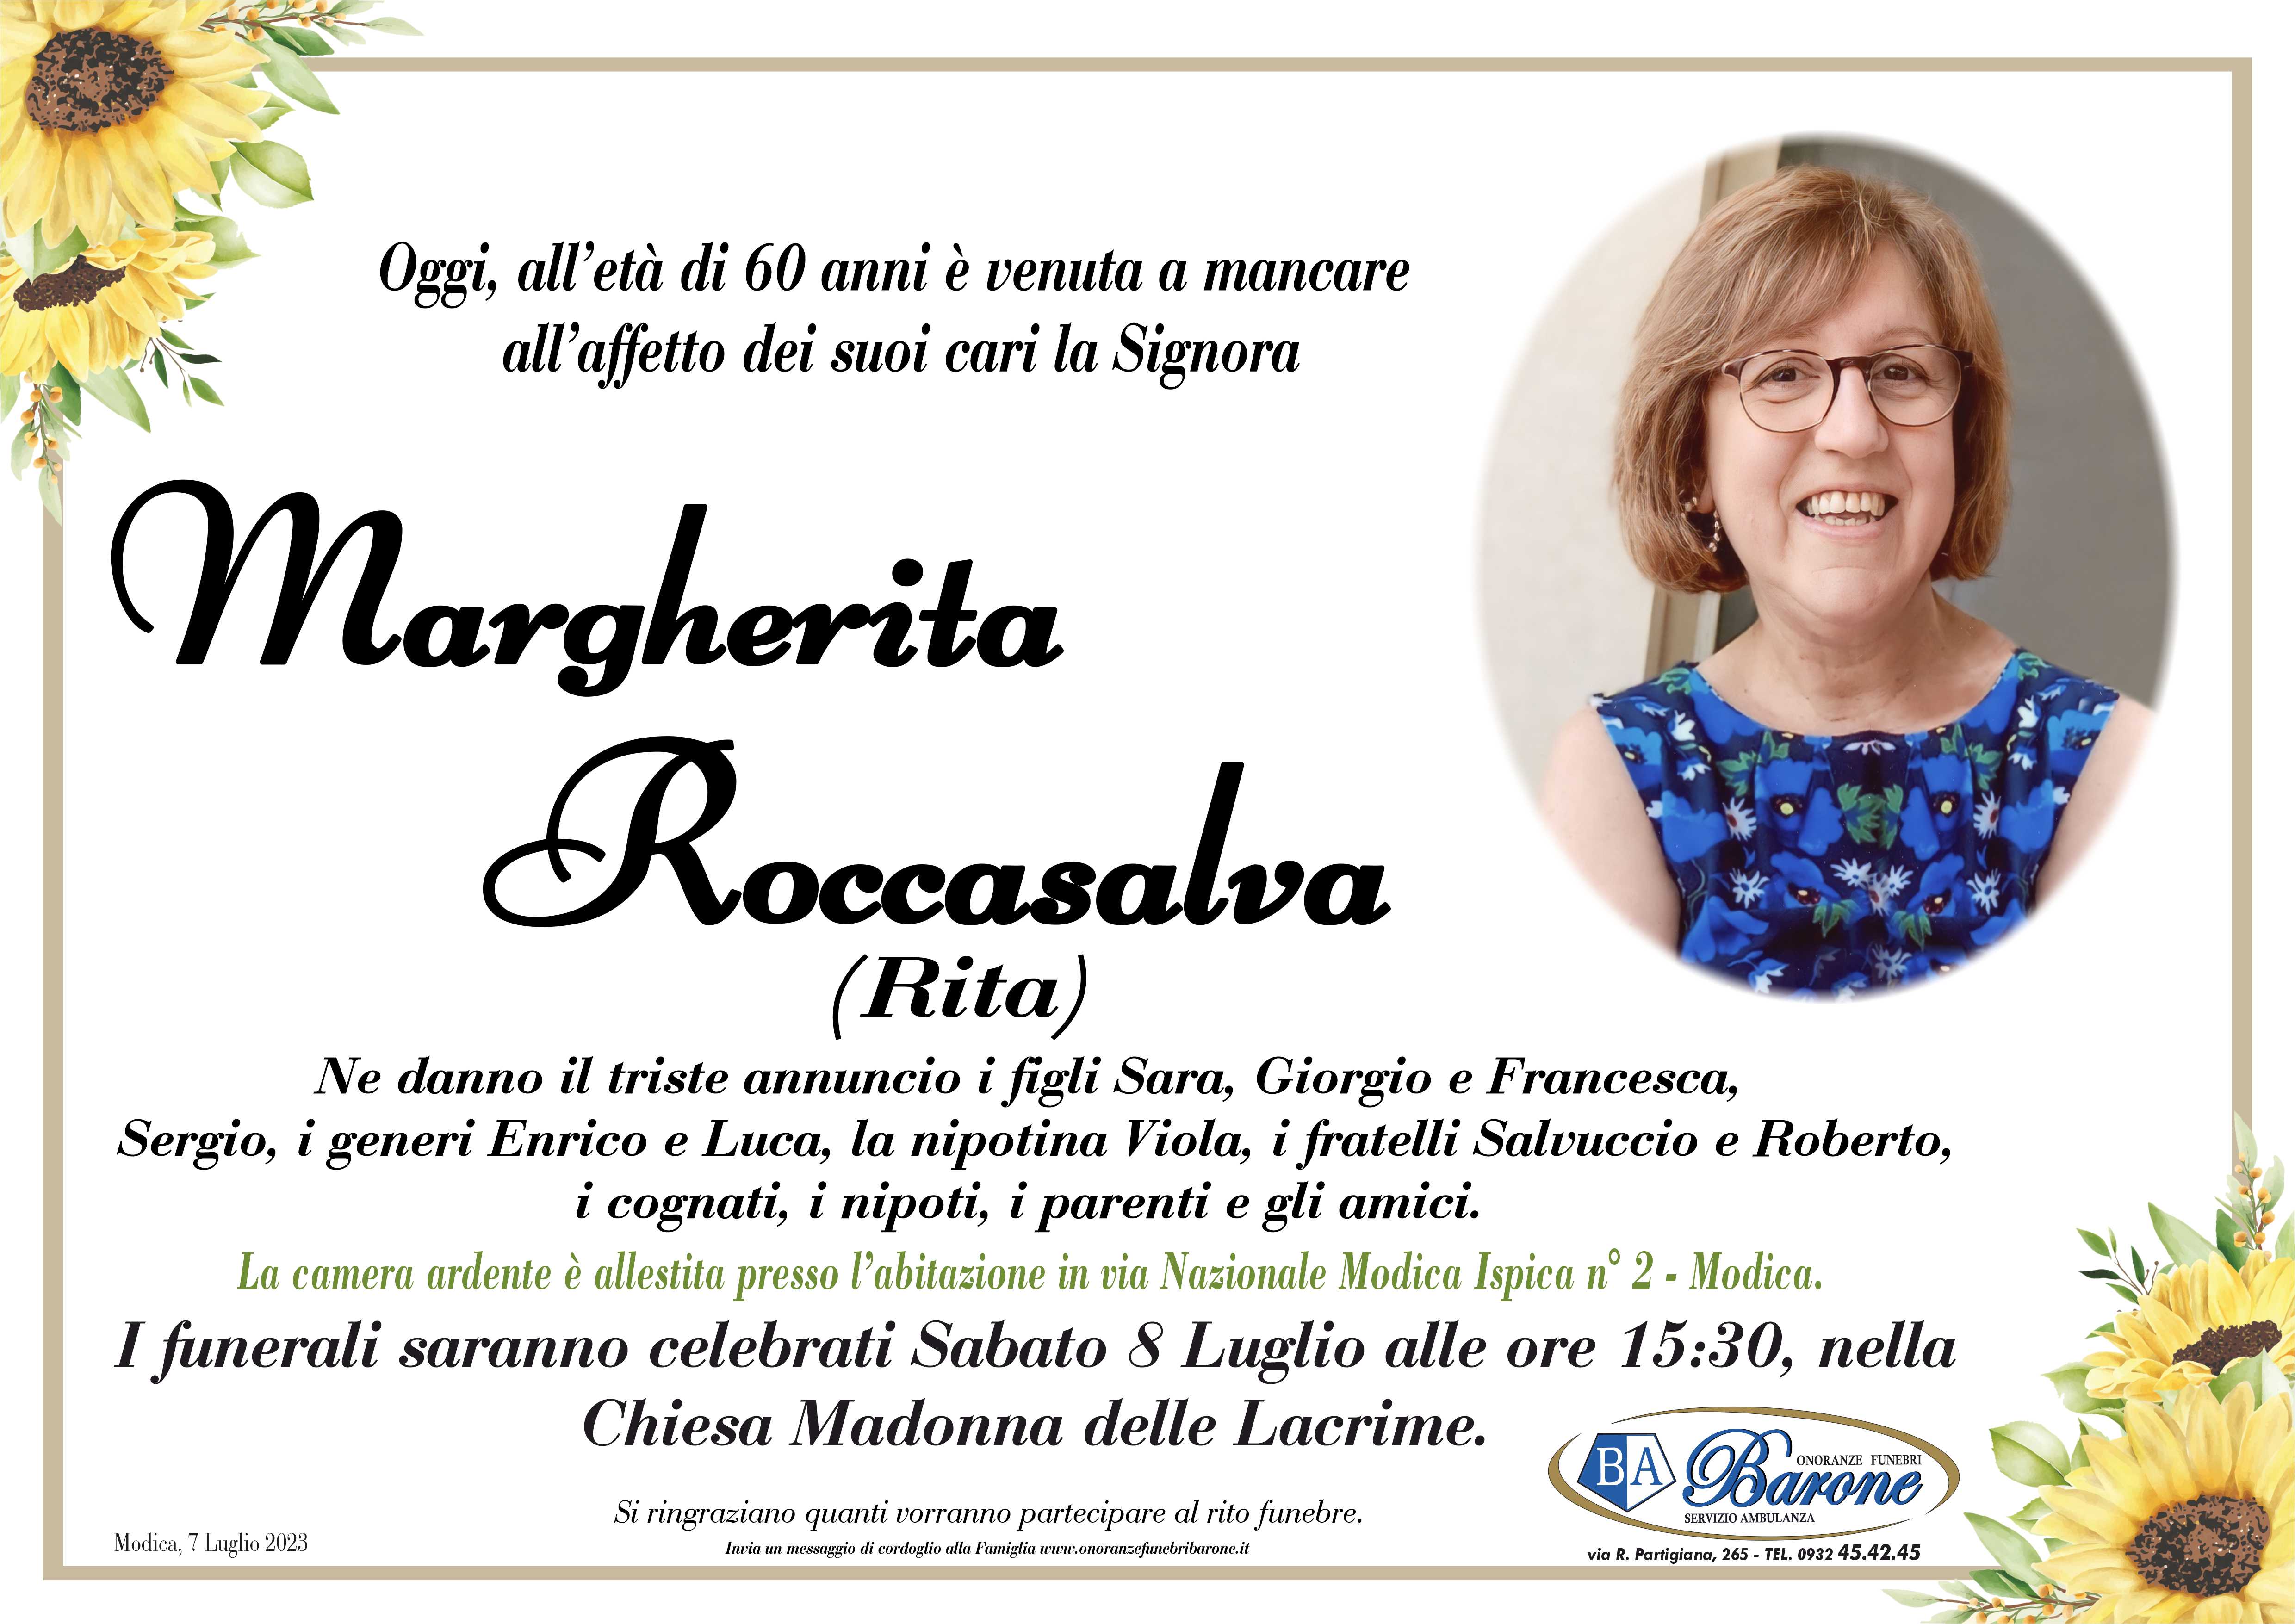 Necrologi: Margherita Roccasalva - Ragusa Oggi